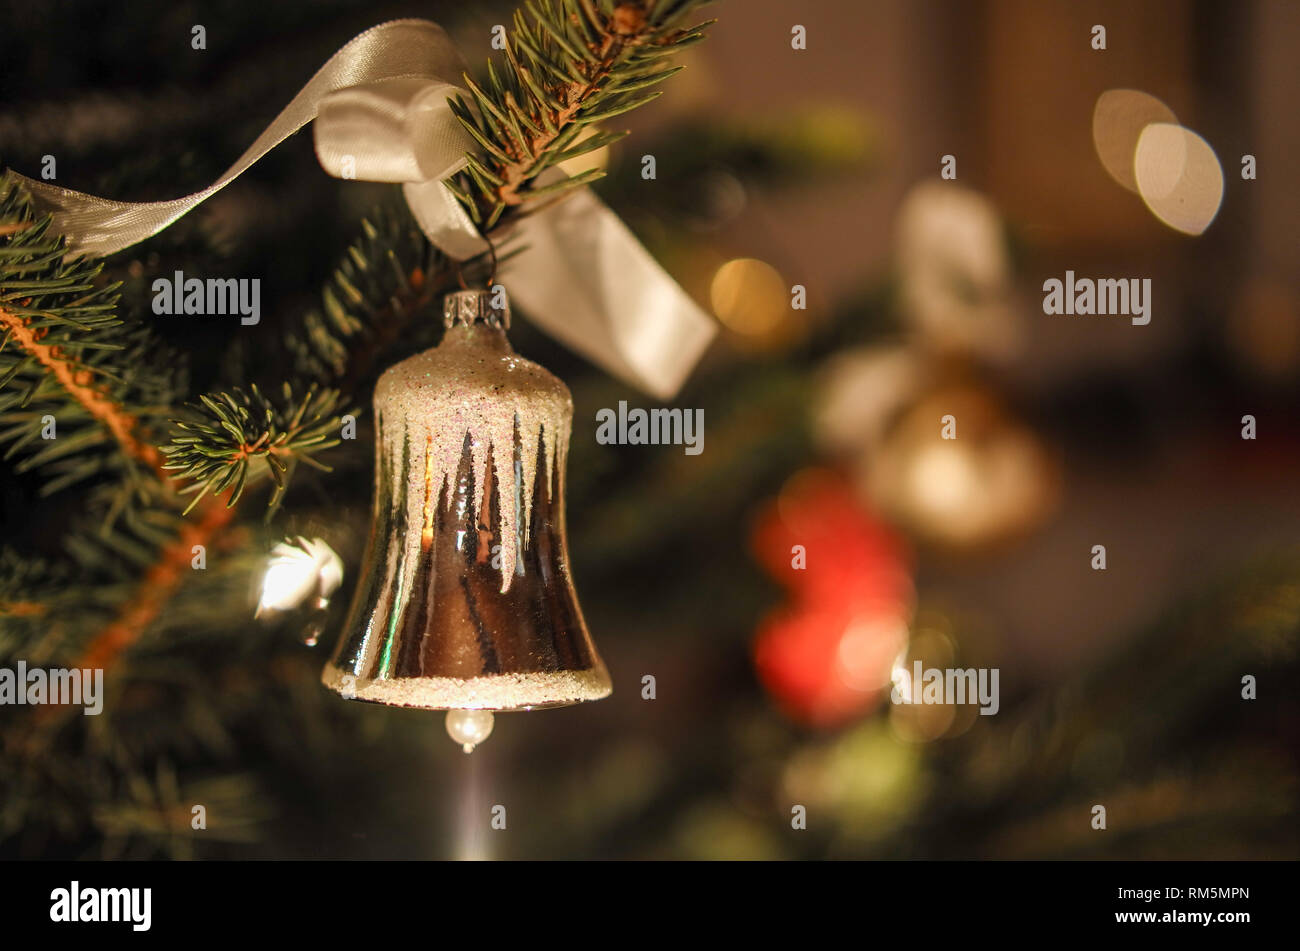 Weihnachtsschmuck, Christbaumschmuck, Weihnachten, Weihnachtsbaum Banque D'Images